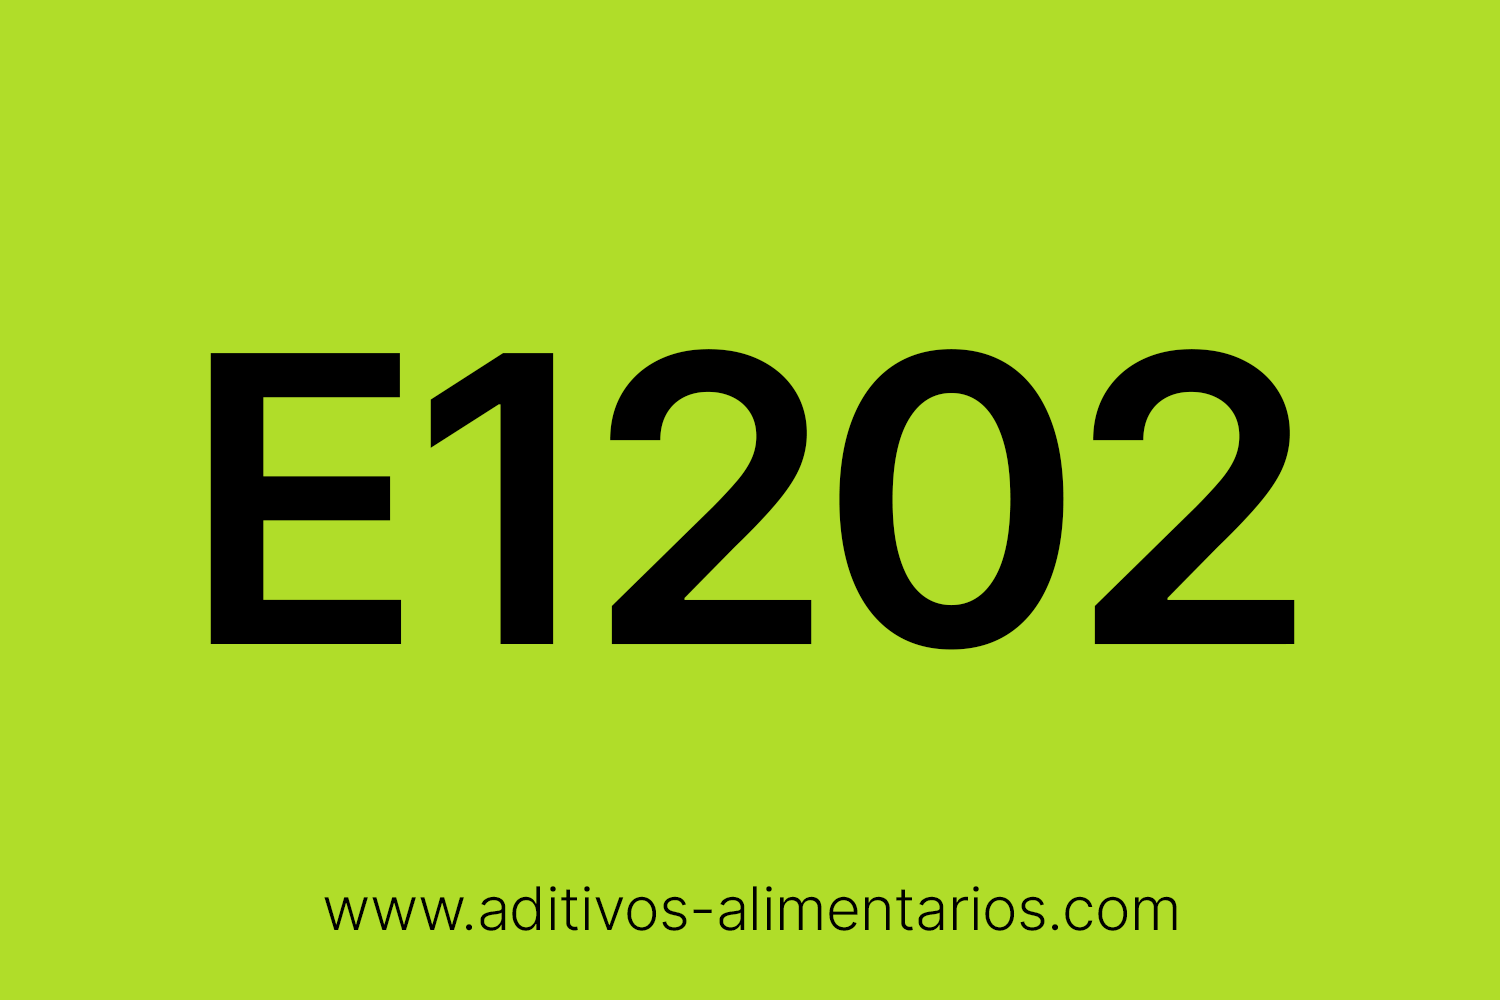 Aditivo Alimentario - E1202 - Polivinilpolipirrolidona (PVPP)